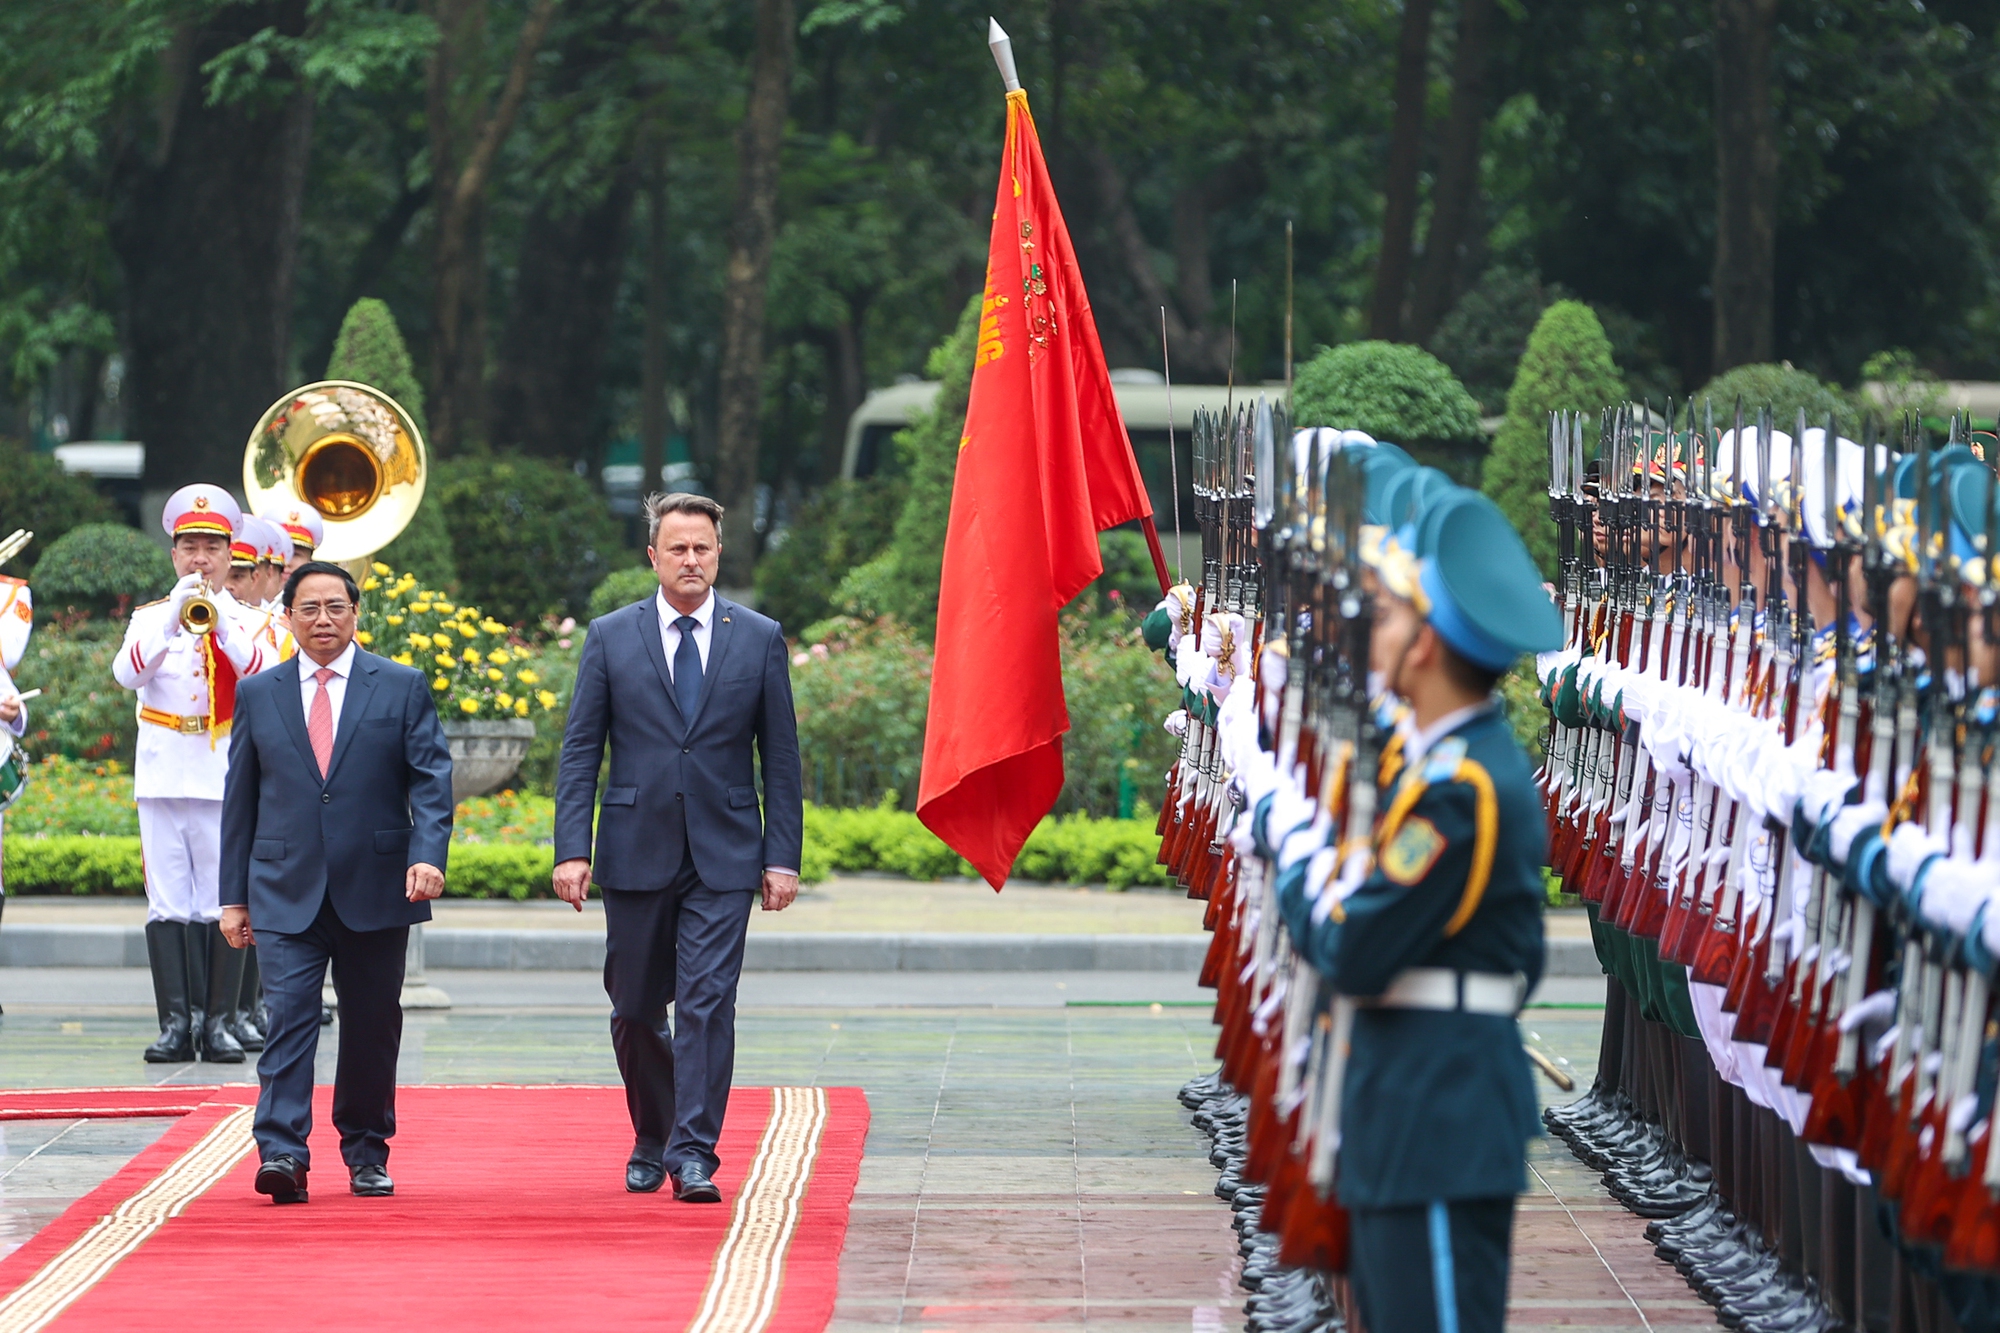 Chùm ảnh: Thủ tướng Phạm Minh Chính đón, hội đàm với Thủ tướng Luxembourg - Ảnh 3.